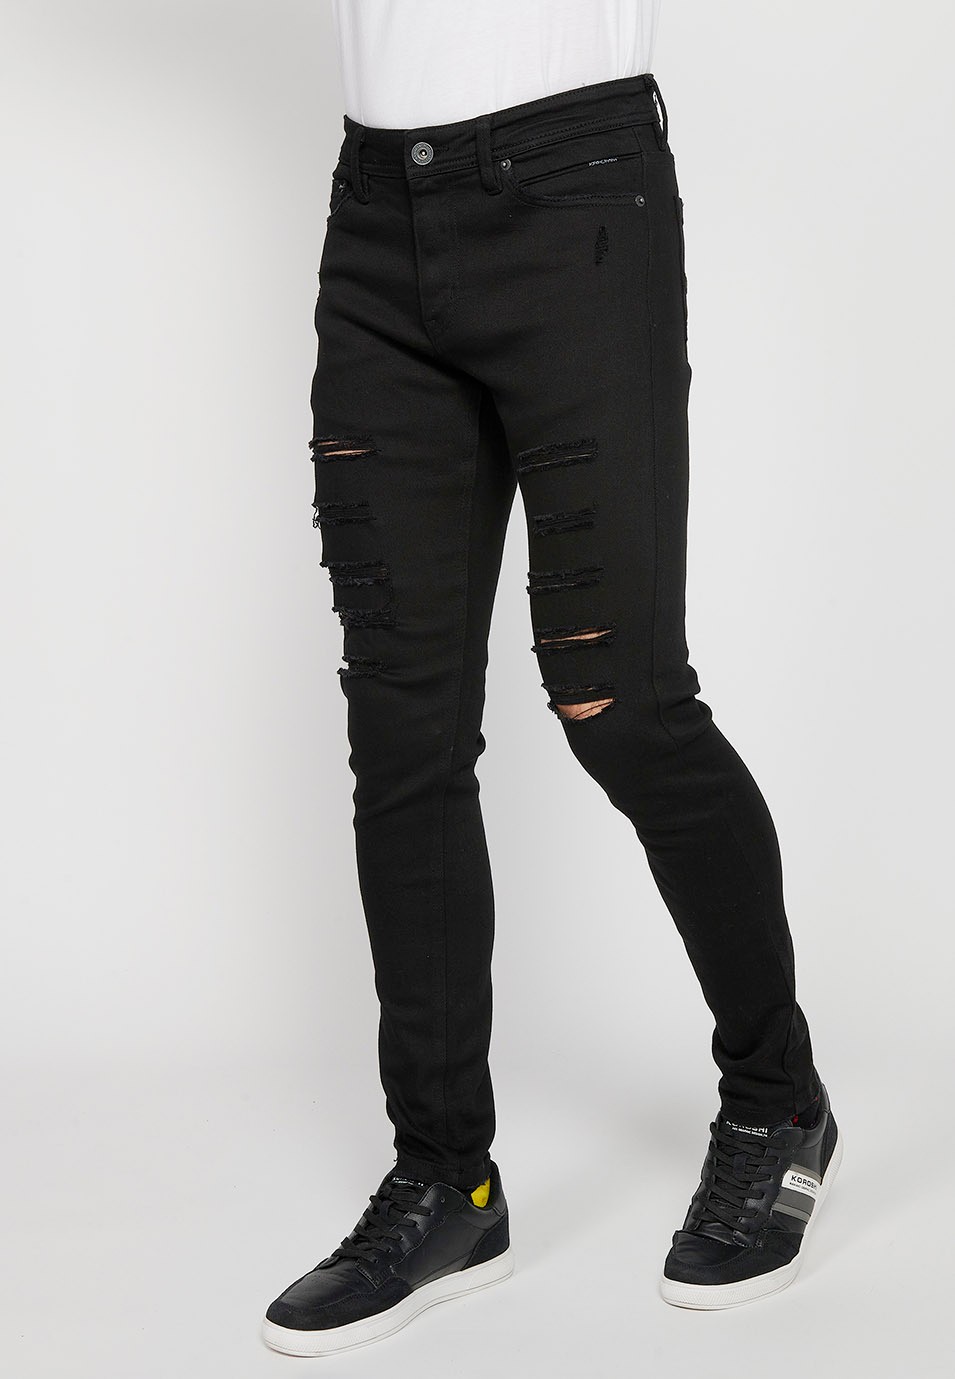 Pantalons texans llarg slim super skinny amb Tancament davanter amb cremallera i botó de Color Denim Negre per a Home 1